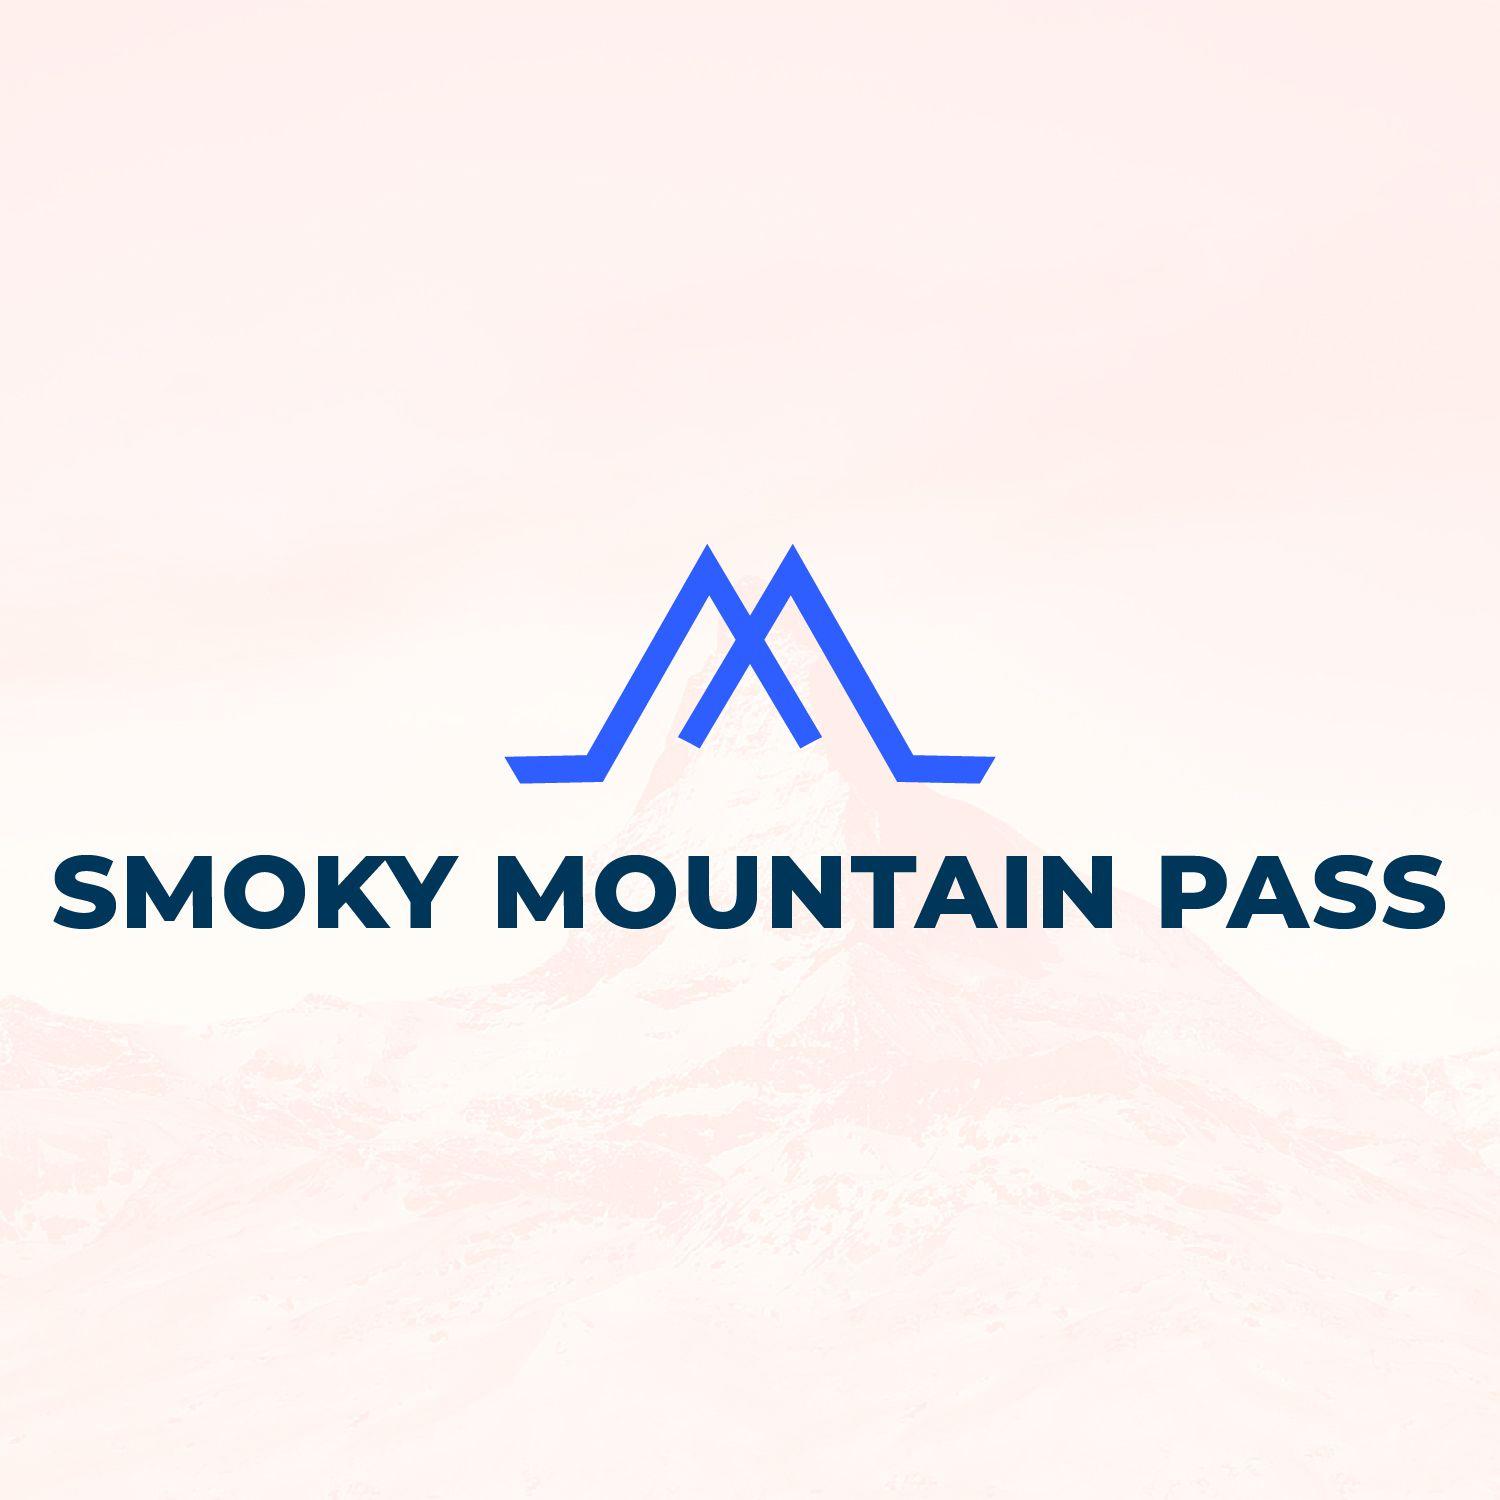 Mountain Entertainment Logo - Elegant, Playful, Entertainment Logo Design for Smoky Mountain Pass